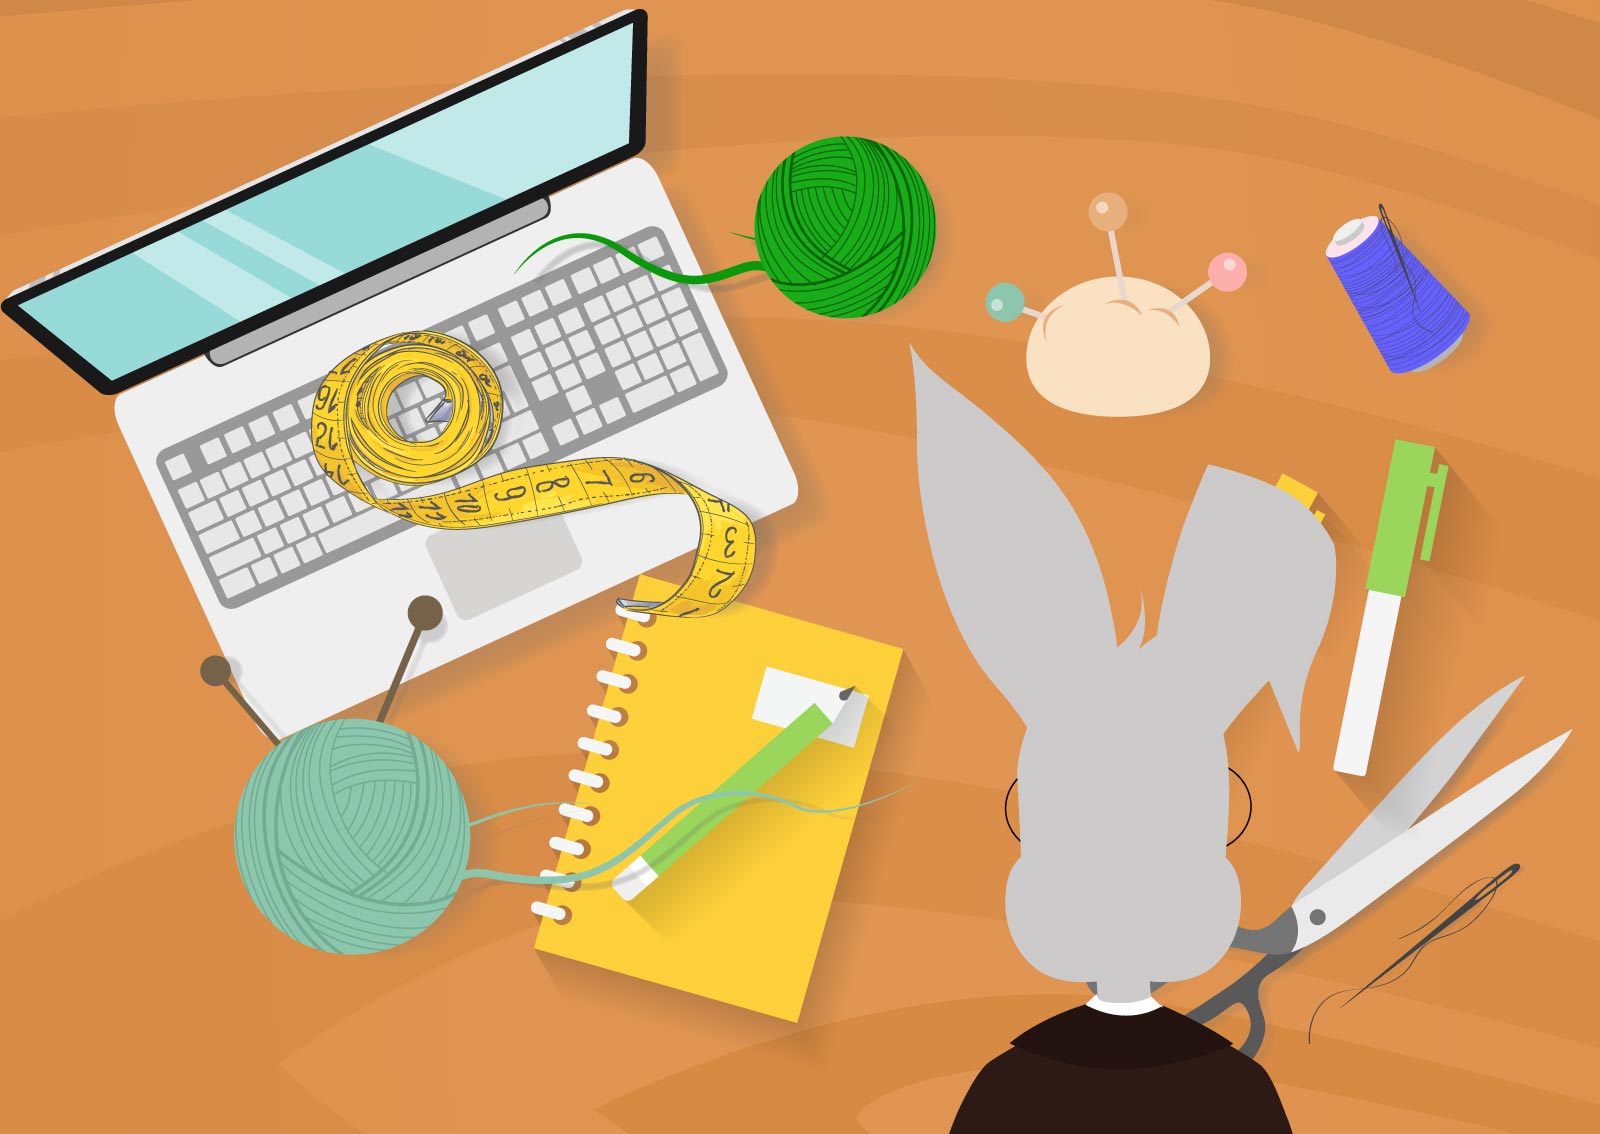 Ilustracija zeke za radnim stolom na kome su laptop, sveska i olovka, traka za merenje, konac, igle, makaze i ostali materijal potreban za dizajn